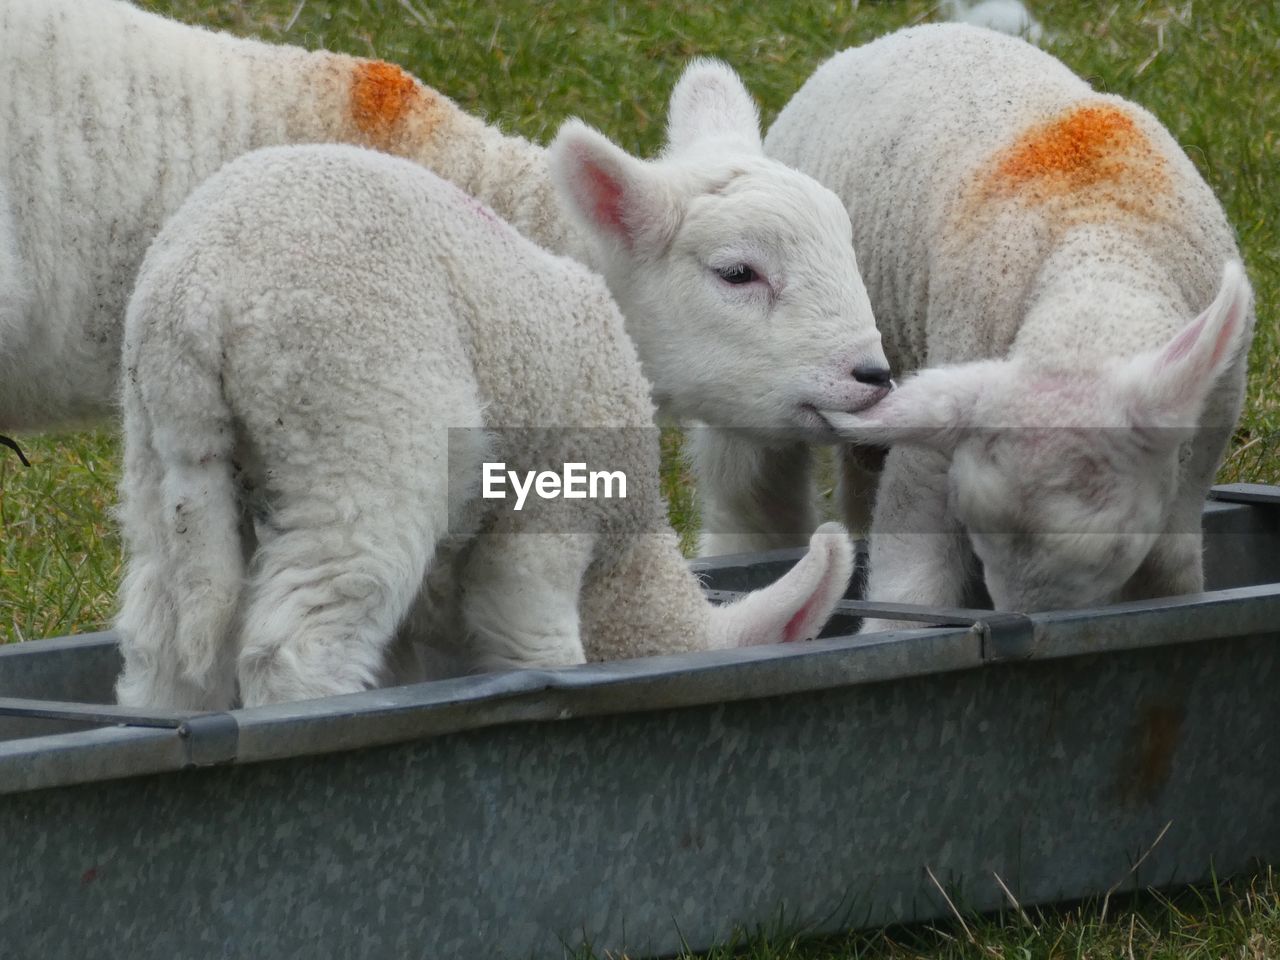 Lambs being lamb